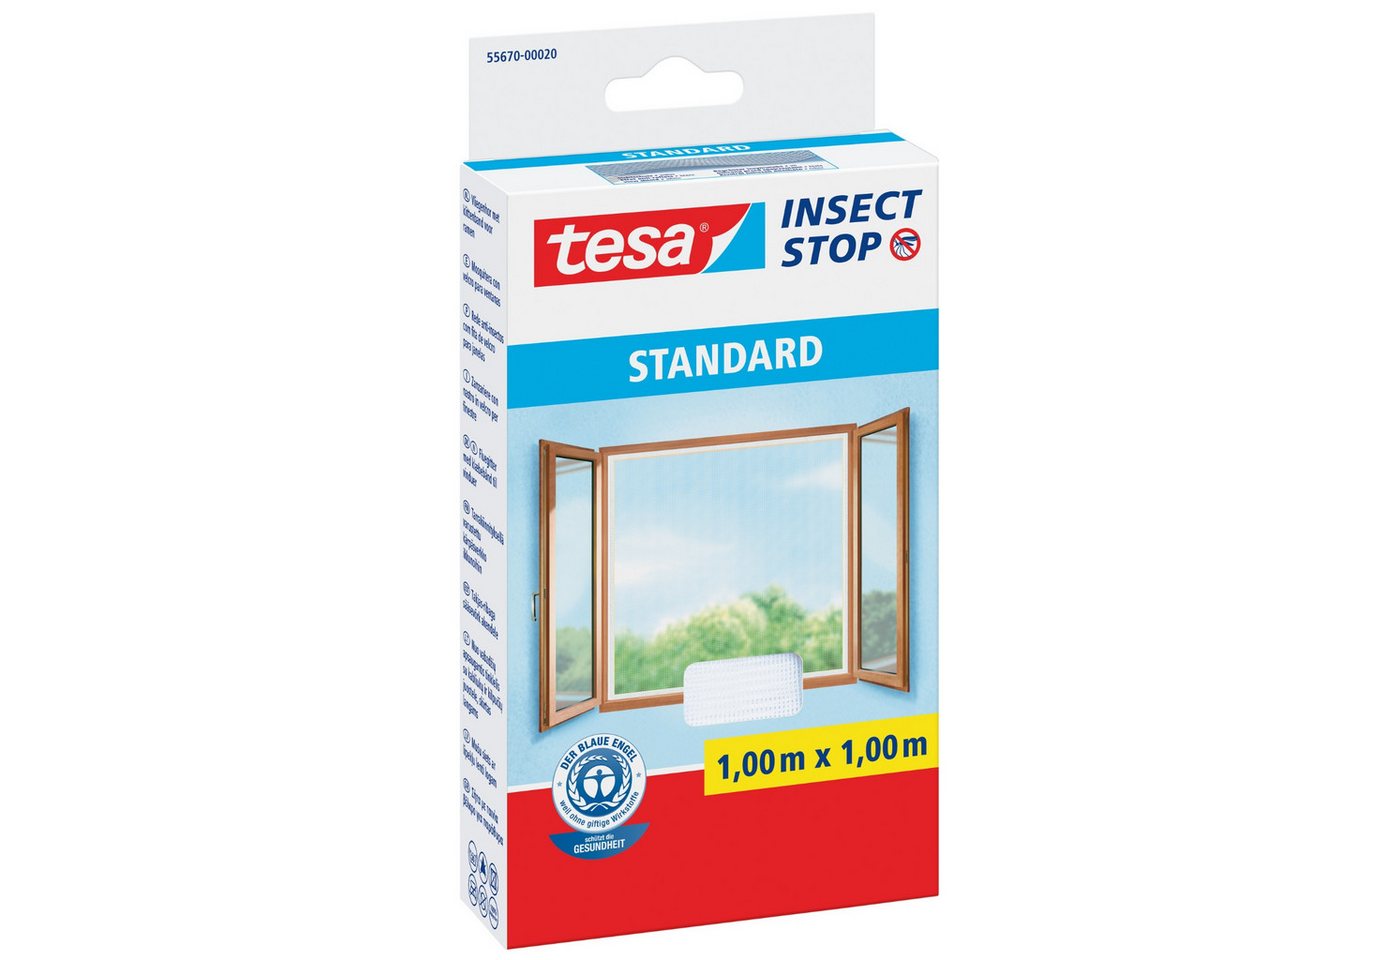 tesa Fliegengitter-Gewebe tesa Fliegengitter Insect Stop STANDARD für Fenster - 1 m x 1 m - weiß von tesa